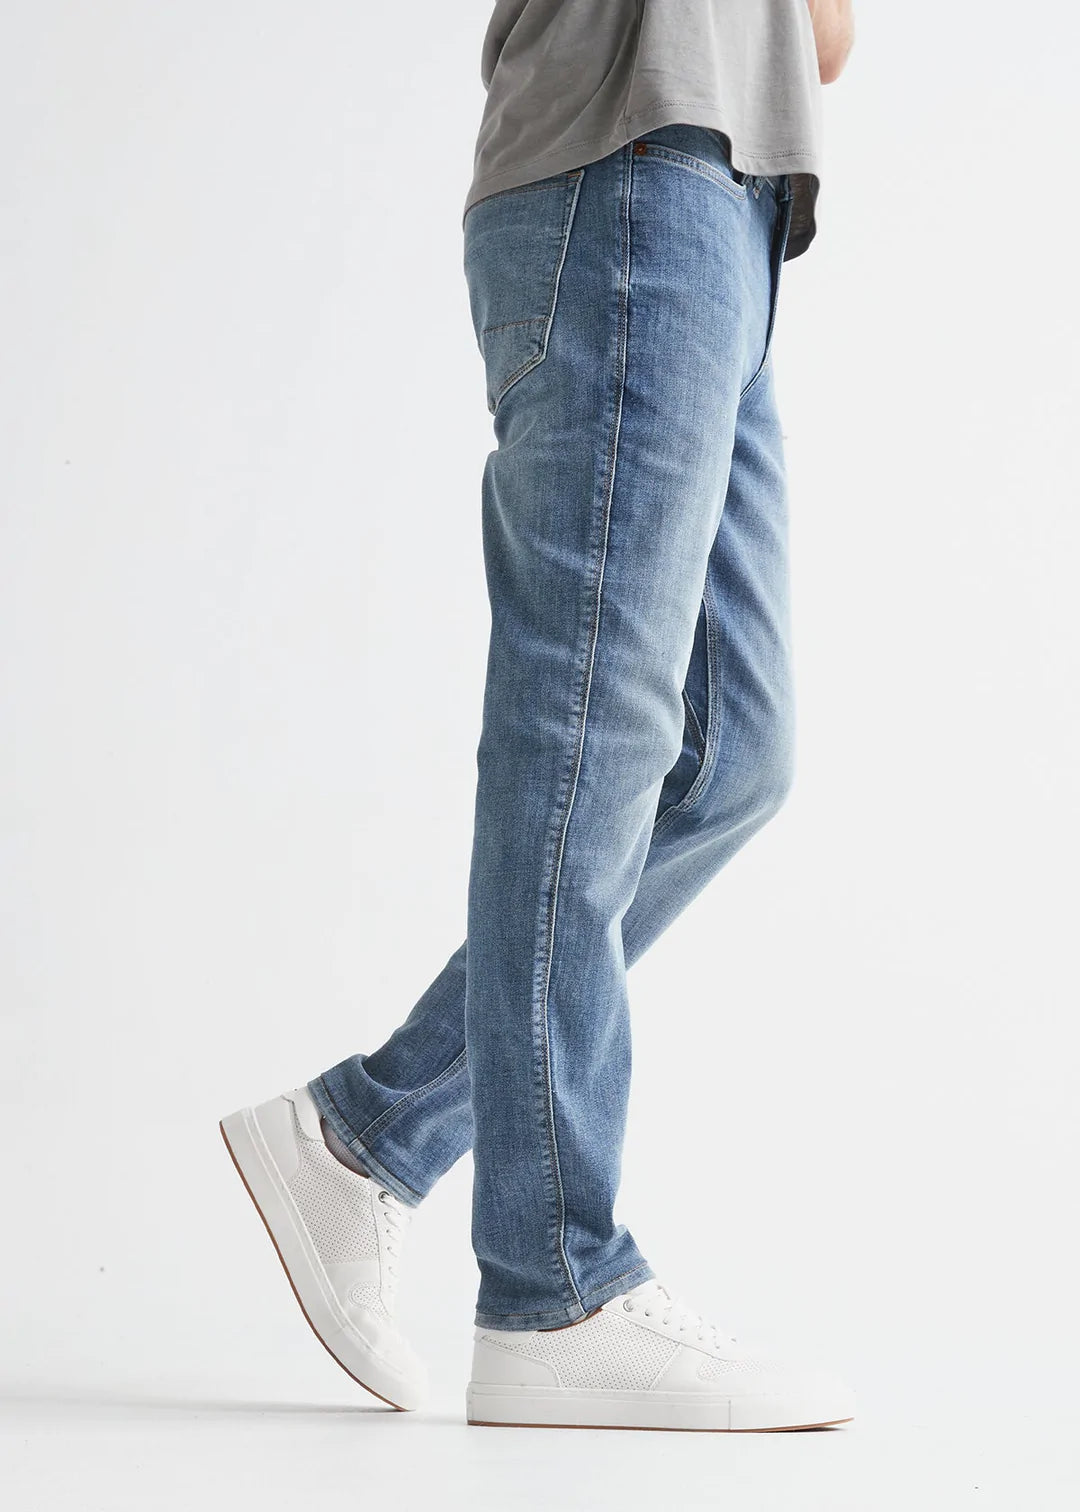 Du/er Performance Denim Slim Jeans Aged Grey